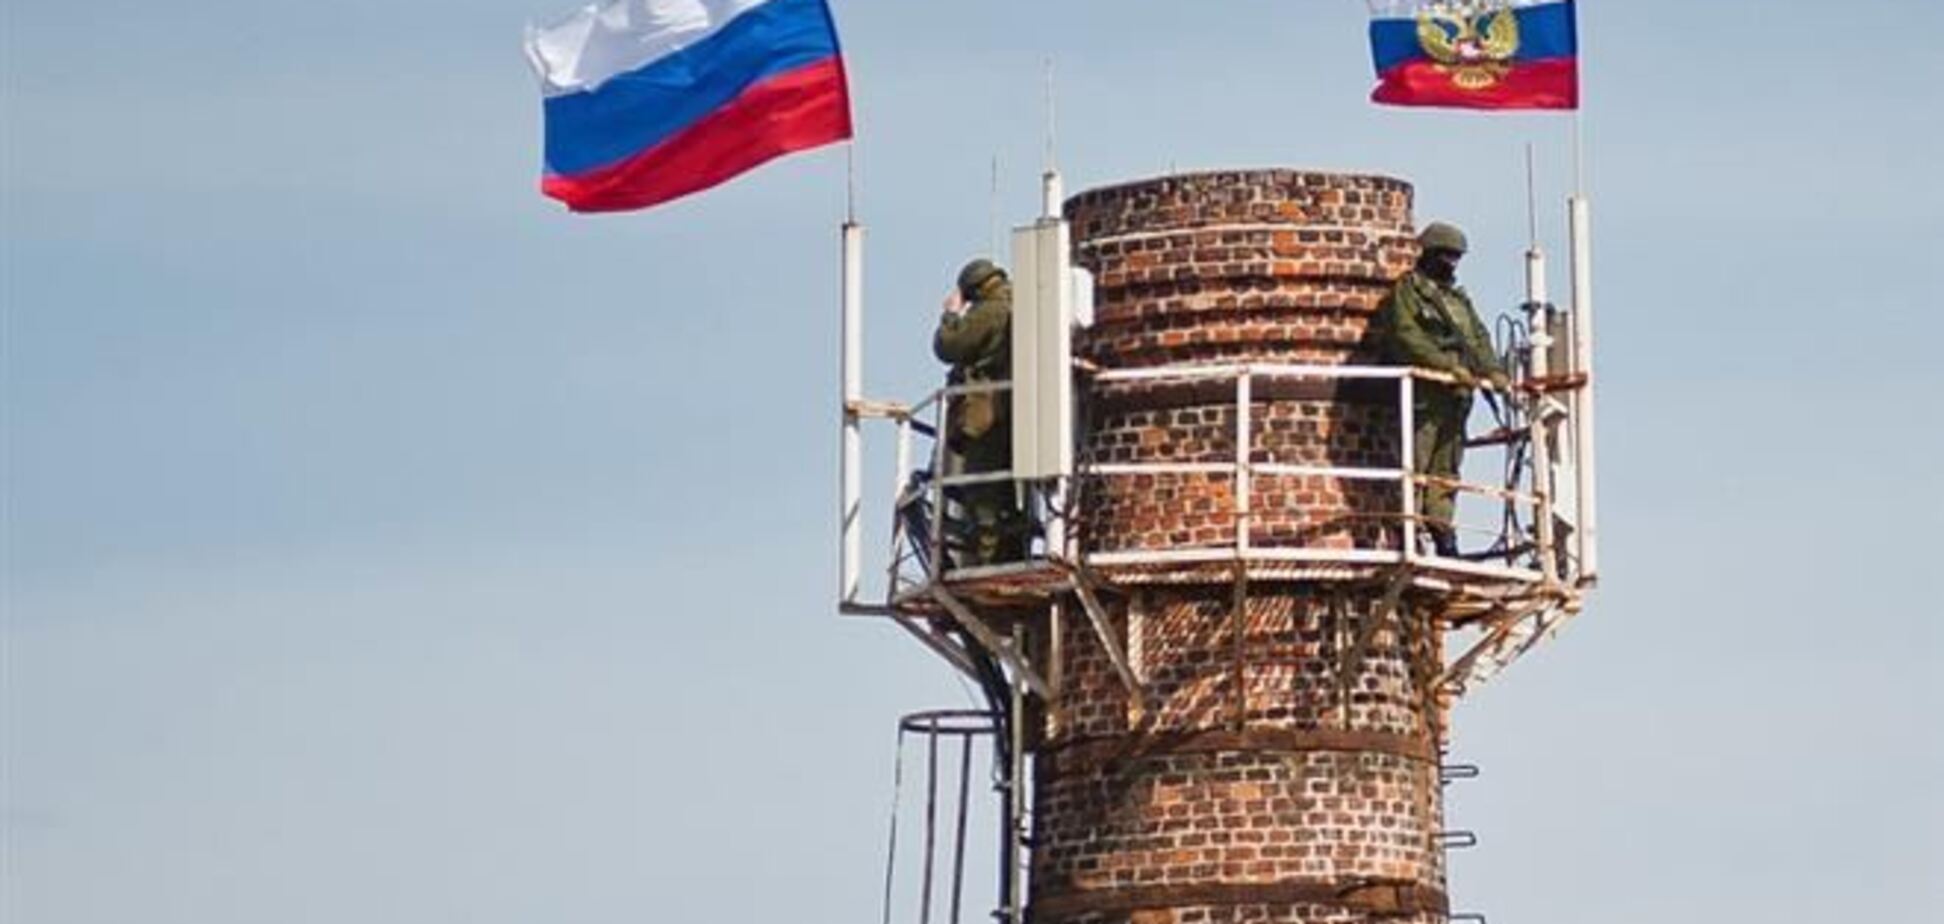 Российские оккупанты силой заставили военных метрологов покинуть базу – Минобороны